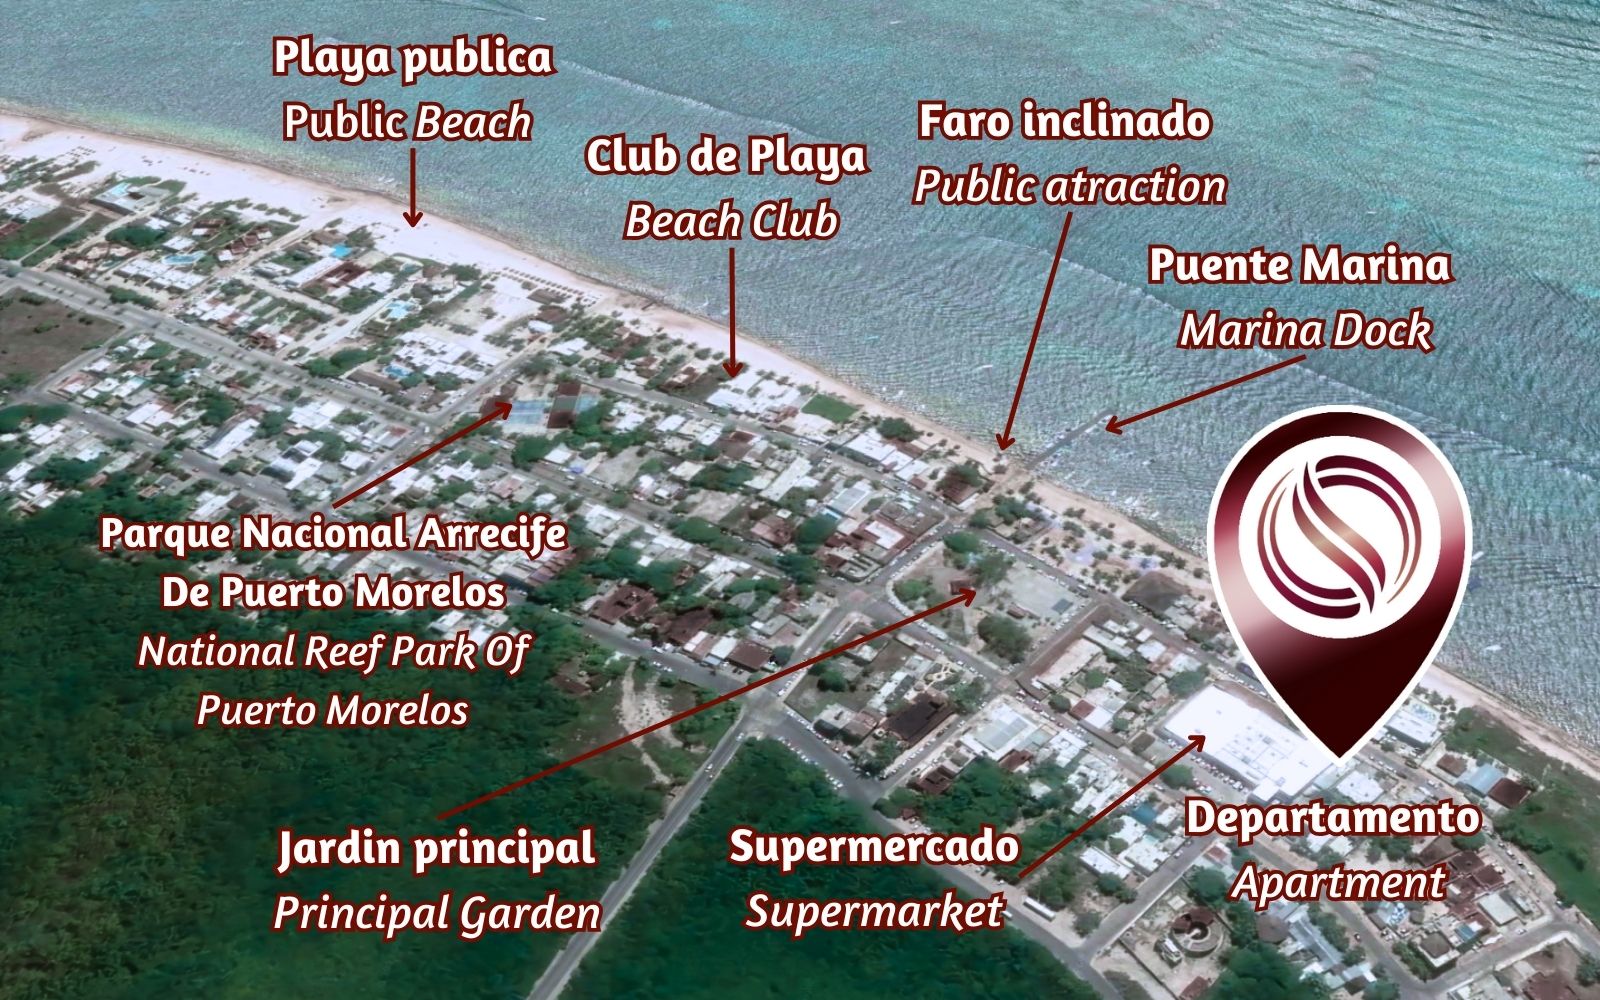 Condominio frente al mar, Jacuzzi privado, amueblado, alberca, venta en Puerto Morelos.